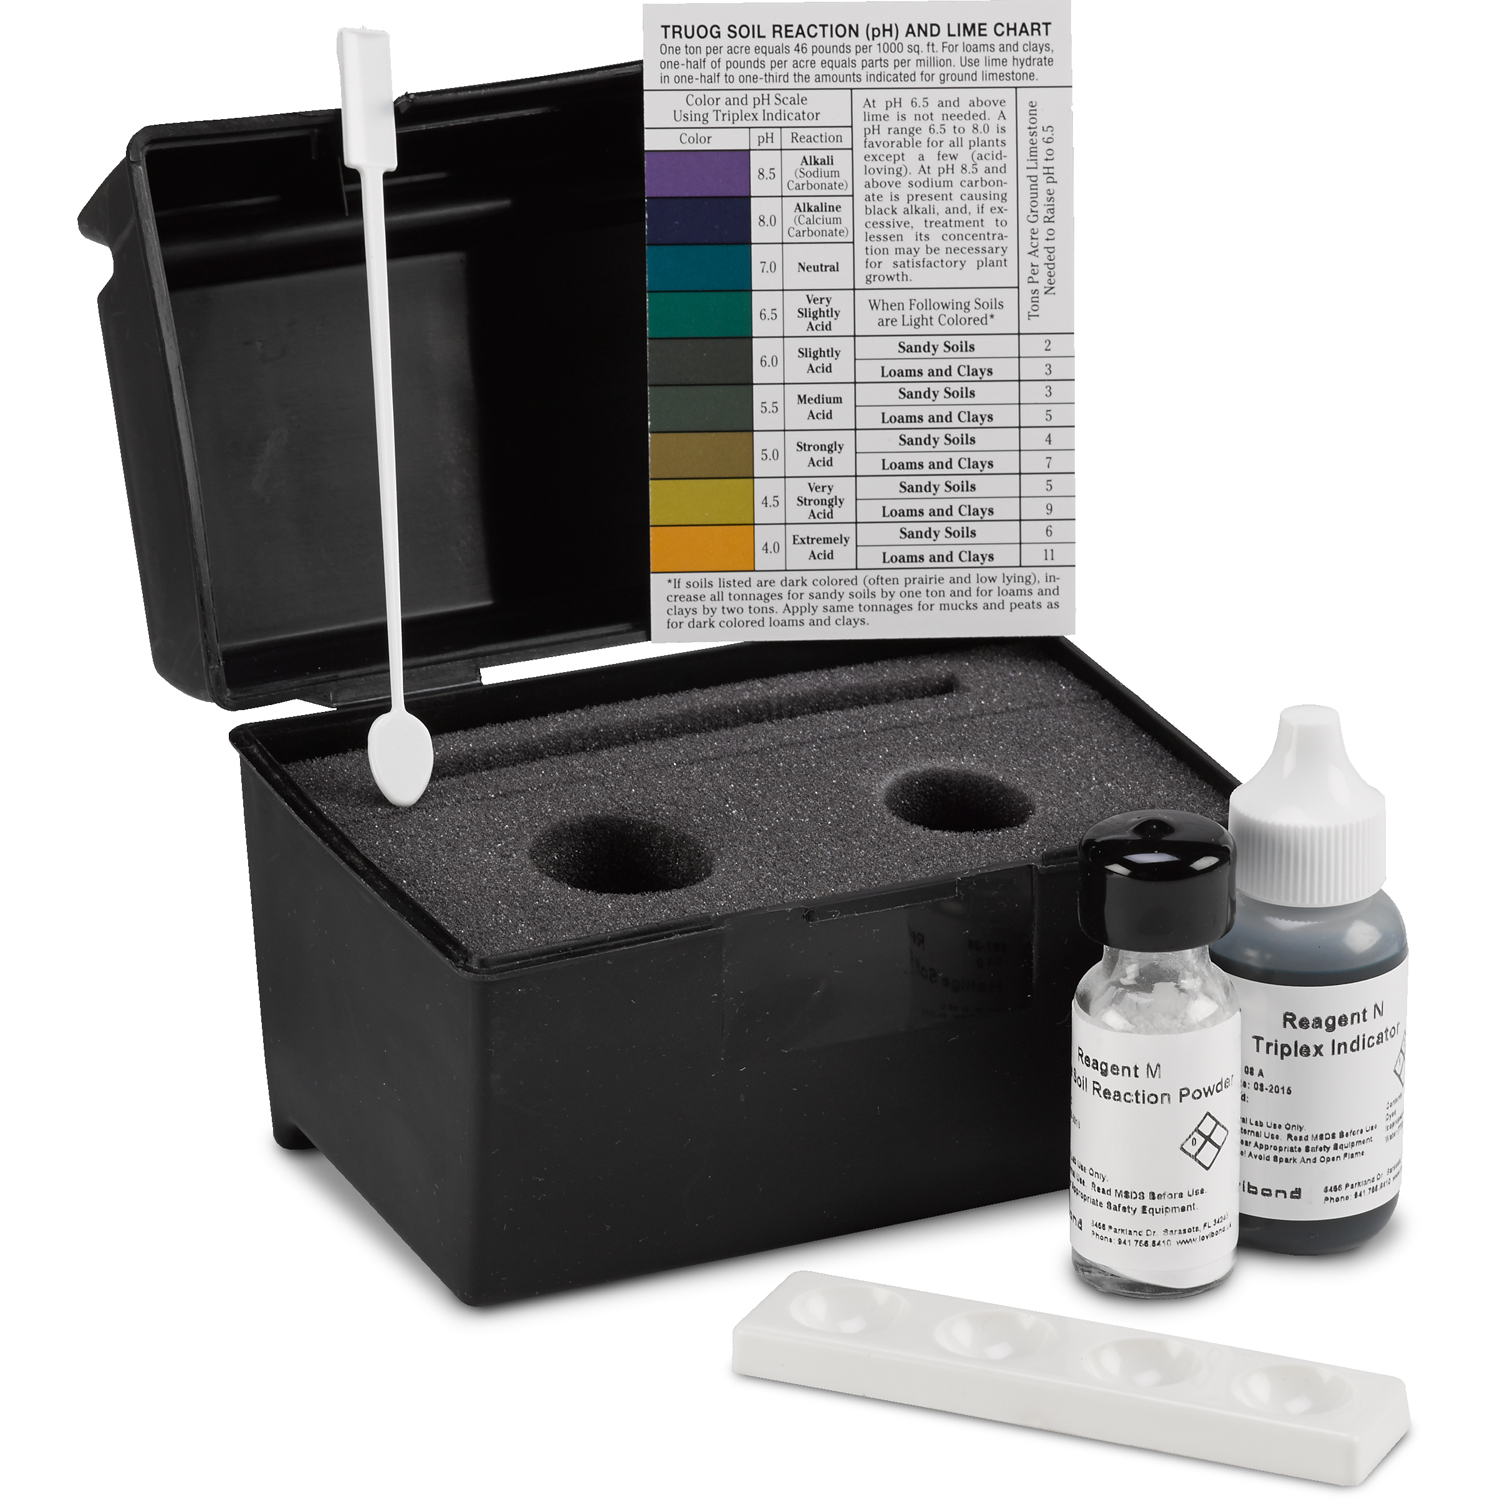 Ph Range Finding LaMotte 1359 Soil pH Test Kit Color Chart 